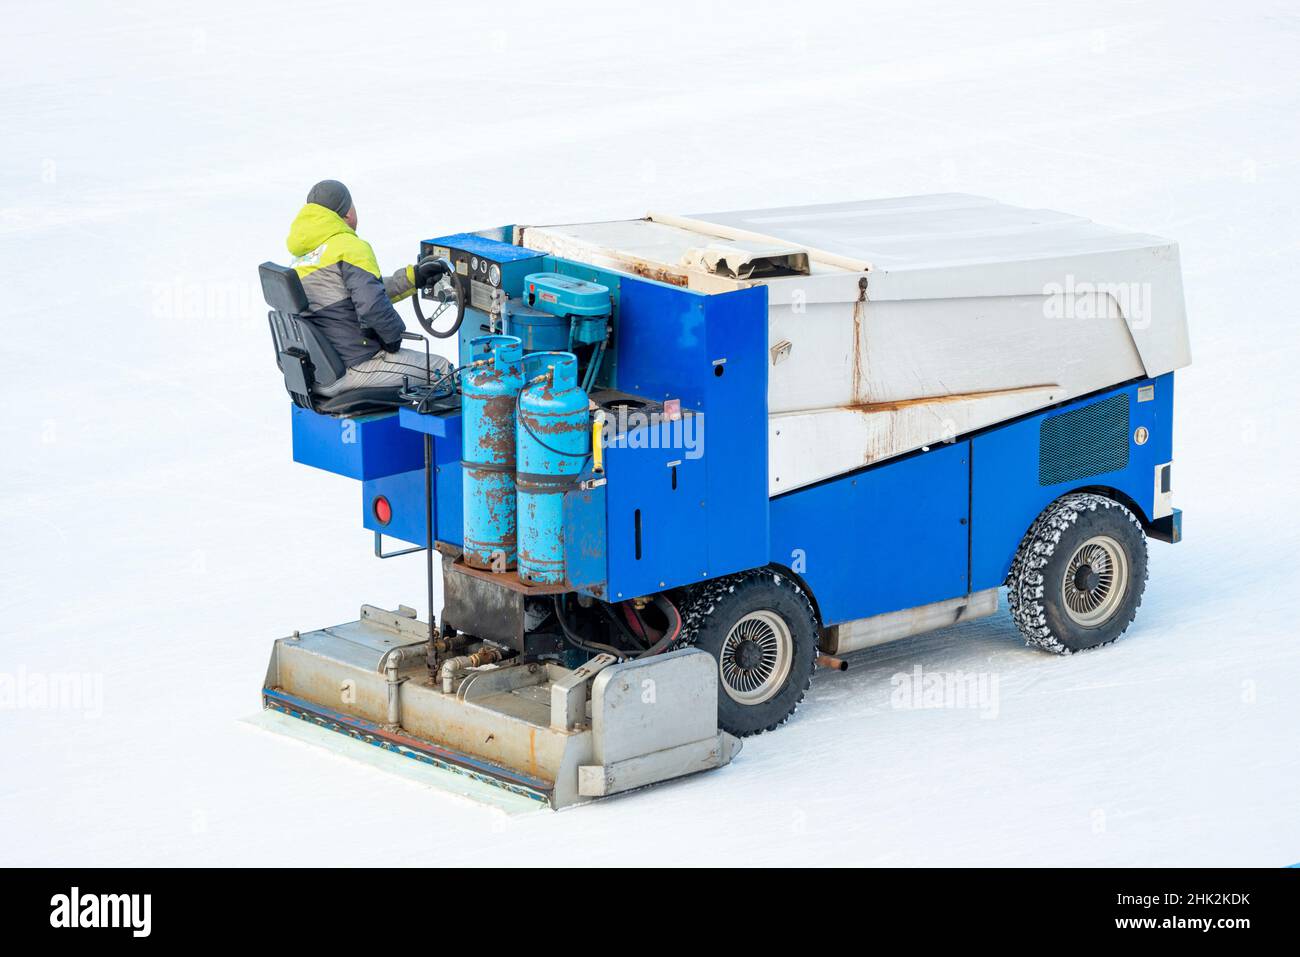 Rückansicht des alten rostigen Zamboni-Eisschachters, der die Eislaufbahn im Freien aufrechterhält Stockfoto